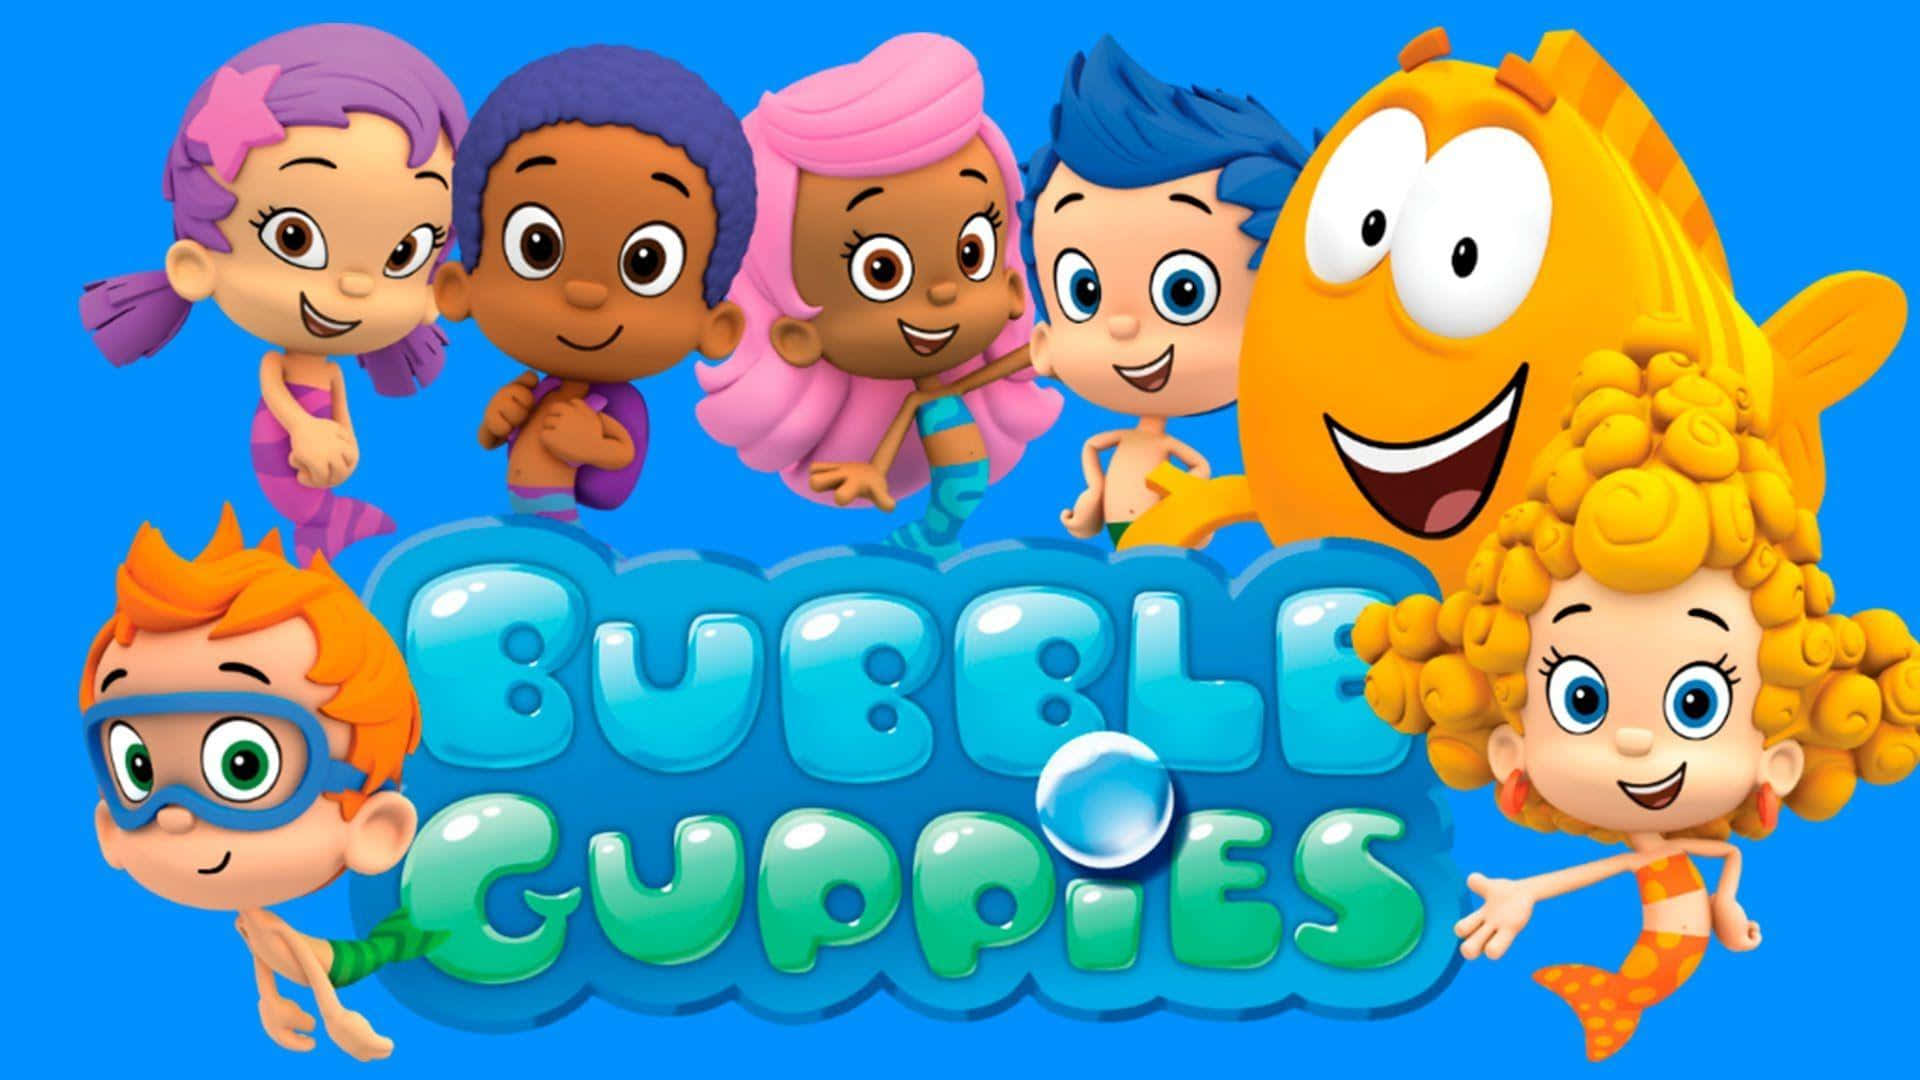 Ildivertente Gruppo Dei Bubble Guppies!